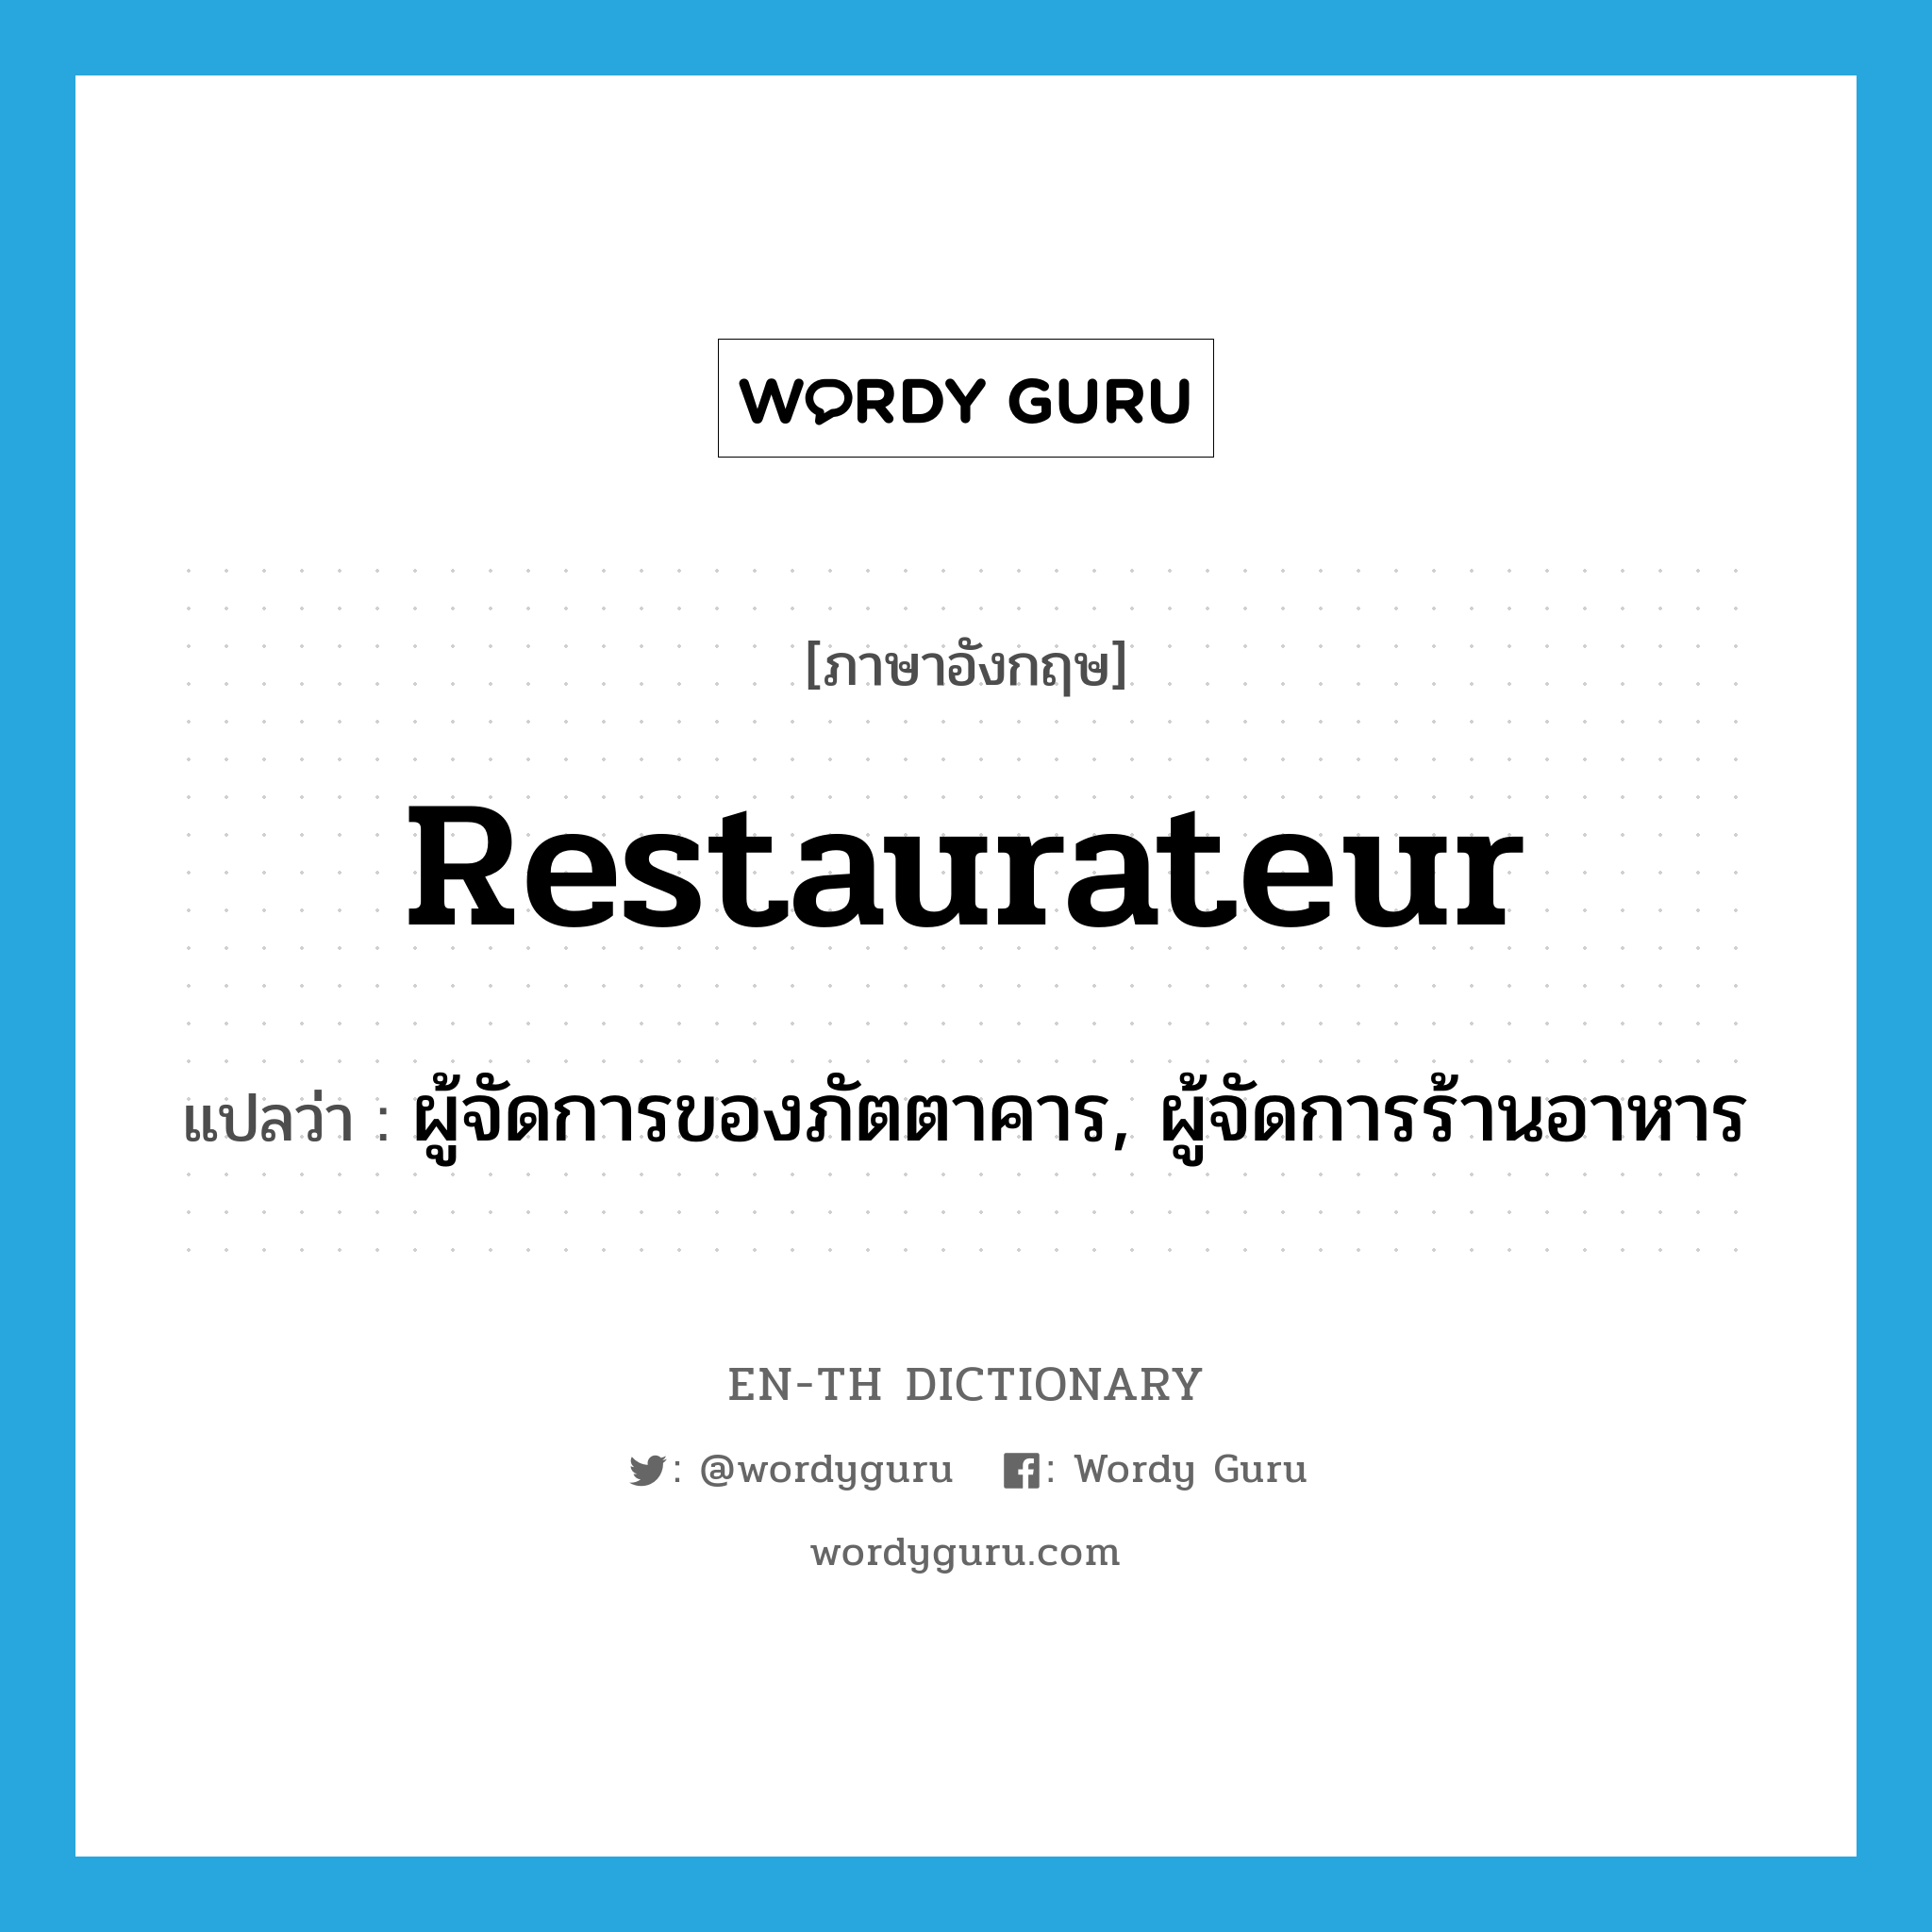 restaurateur แปลว่า?, คำศัพท์ภาษาอังกฤษ restaurateur แปลว่า ผู้จัดการของภัตตาคาร, ผู้จัดการร้านอาหาร ประเภท N หมวด N